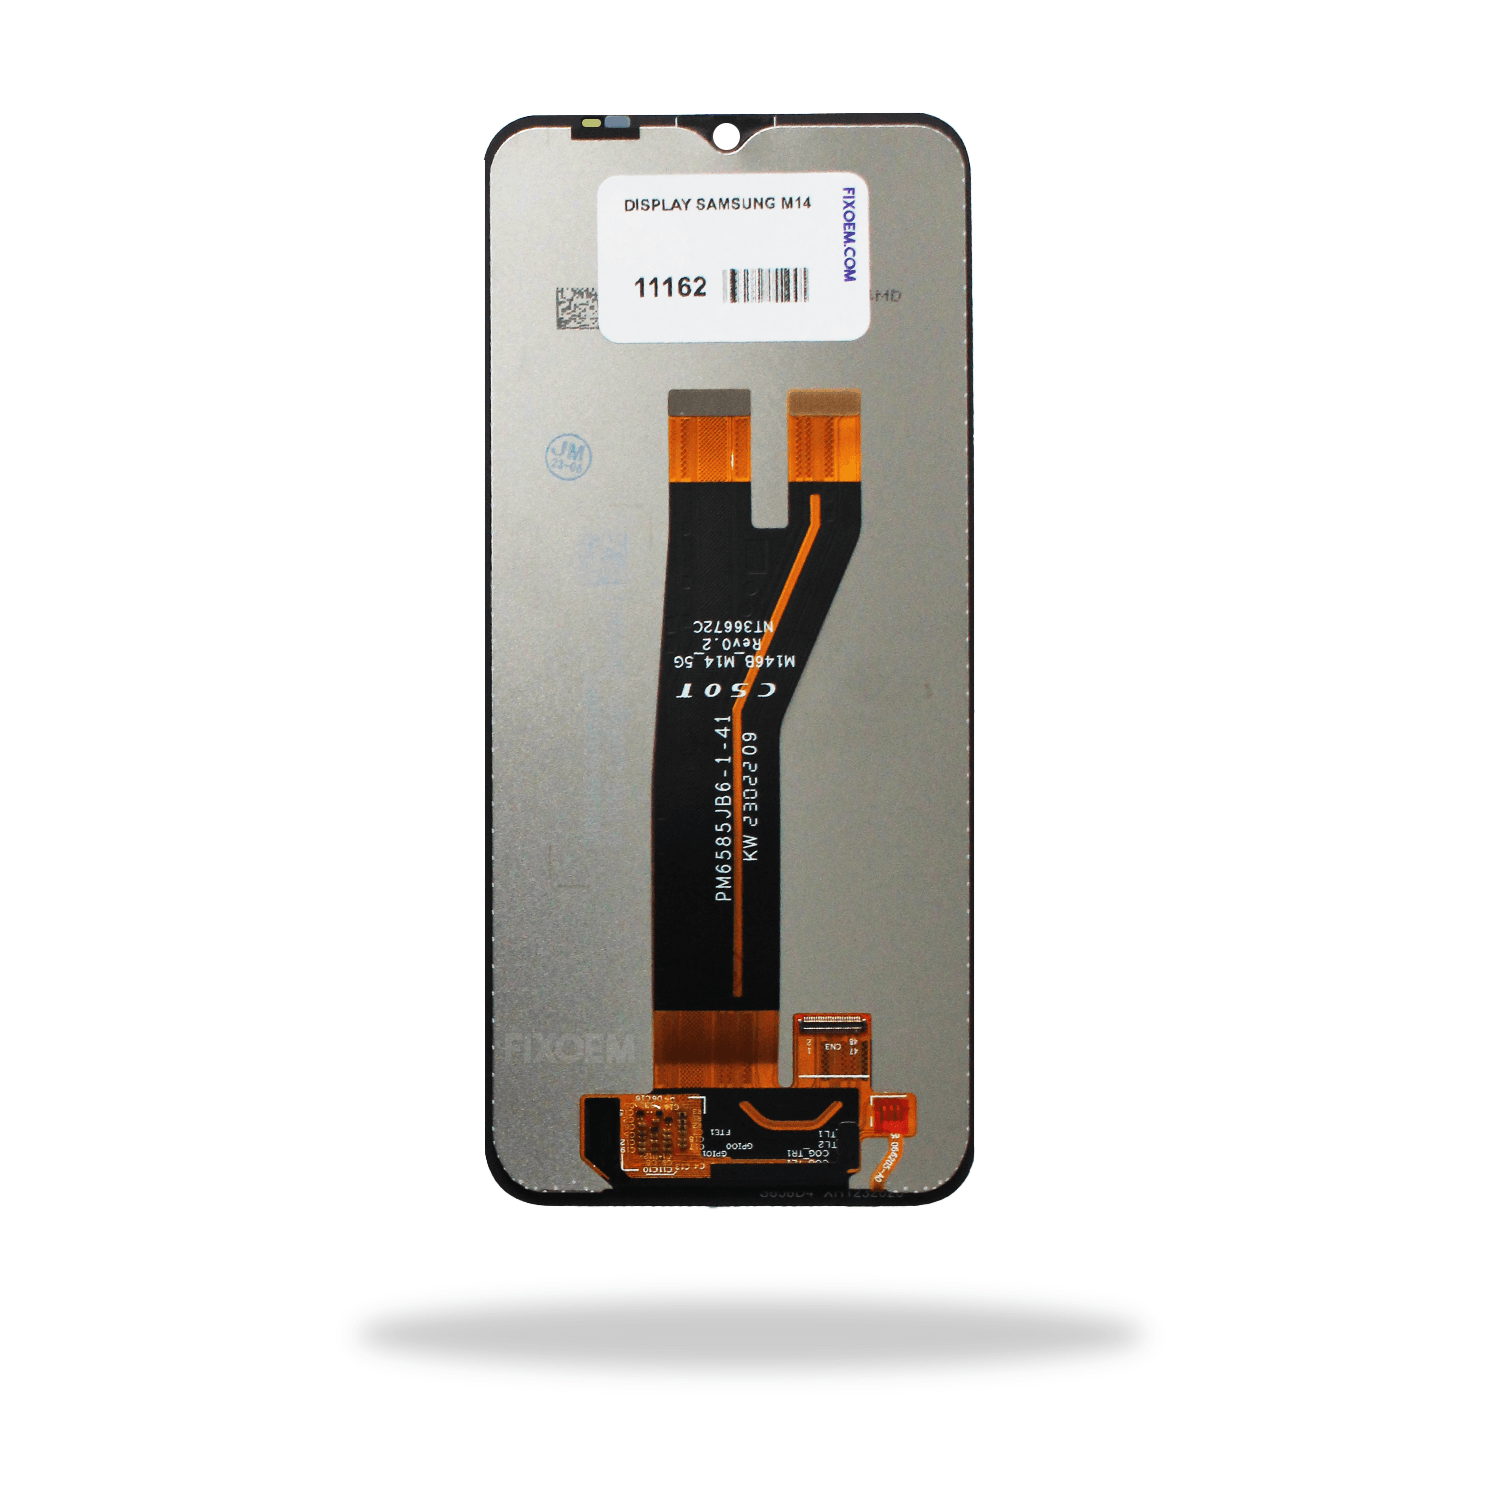 Display Samsung M14 Ips Sm-m146b a solo $ 280.00 Refaccion y puestos celulares, refurbish y microelectronica.- FixOEM